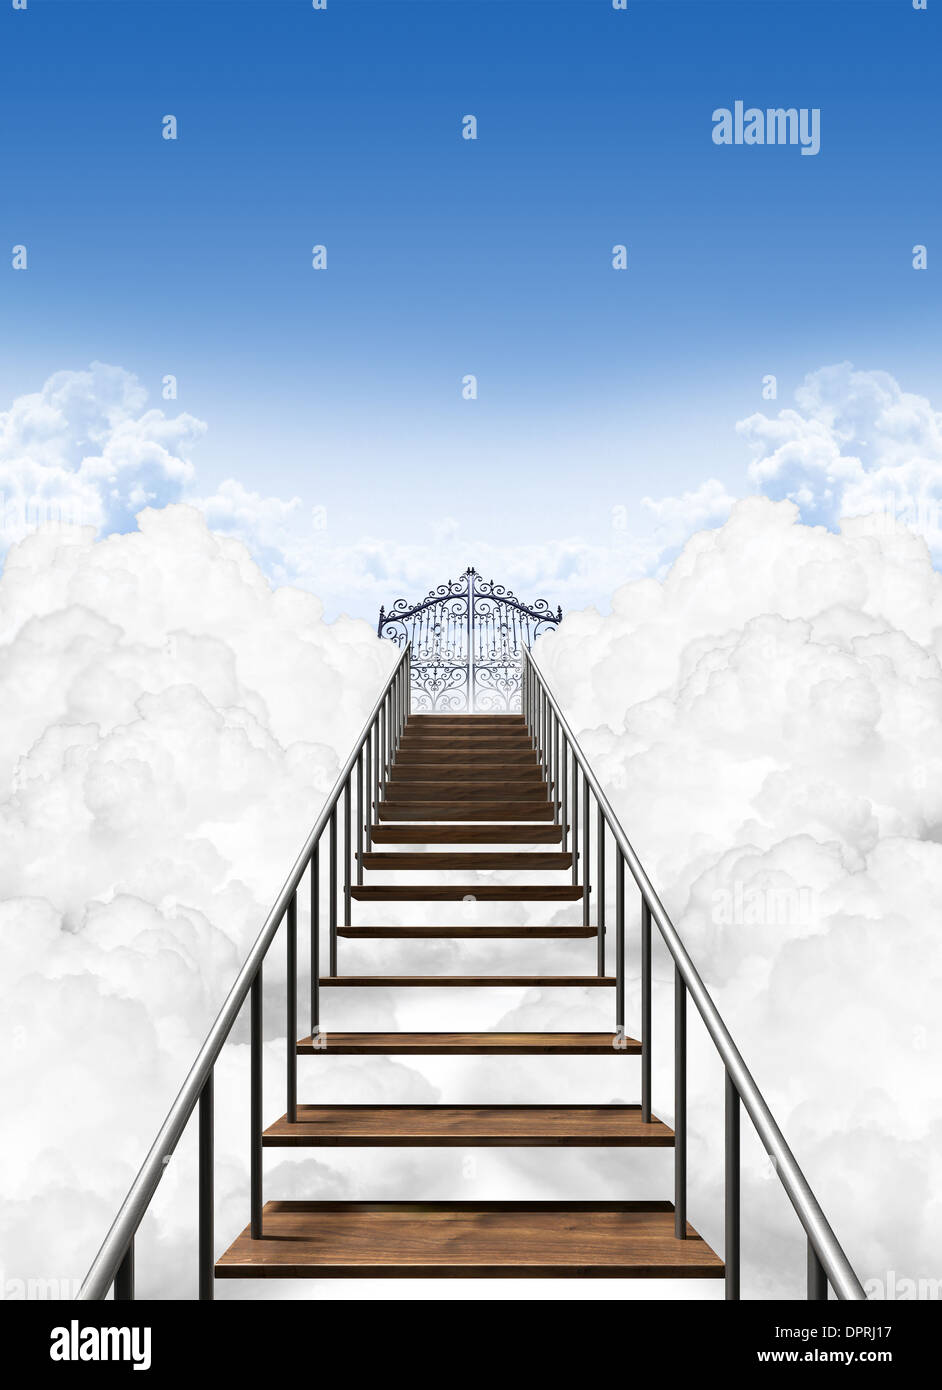 Une Representation De L Escalier Au Ciel Paradis Au Dessus Des Nuages Sur Un Fond De Ciel Bleu Clair Photo Stock Alamy